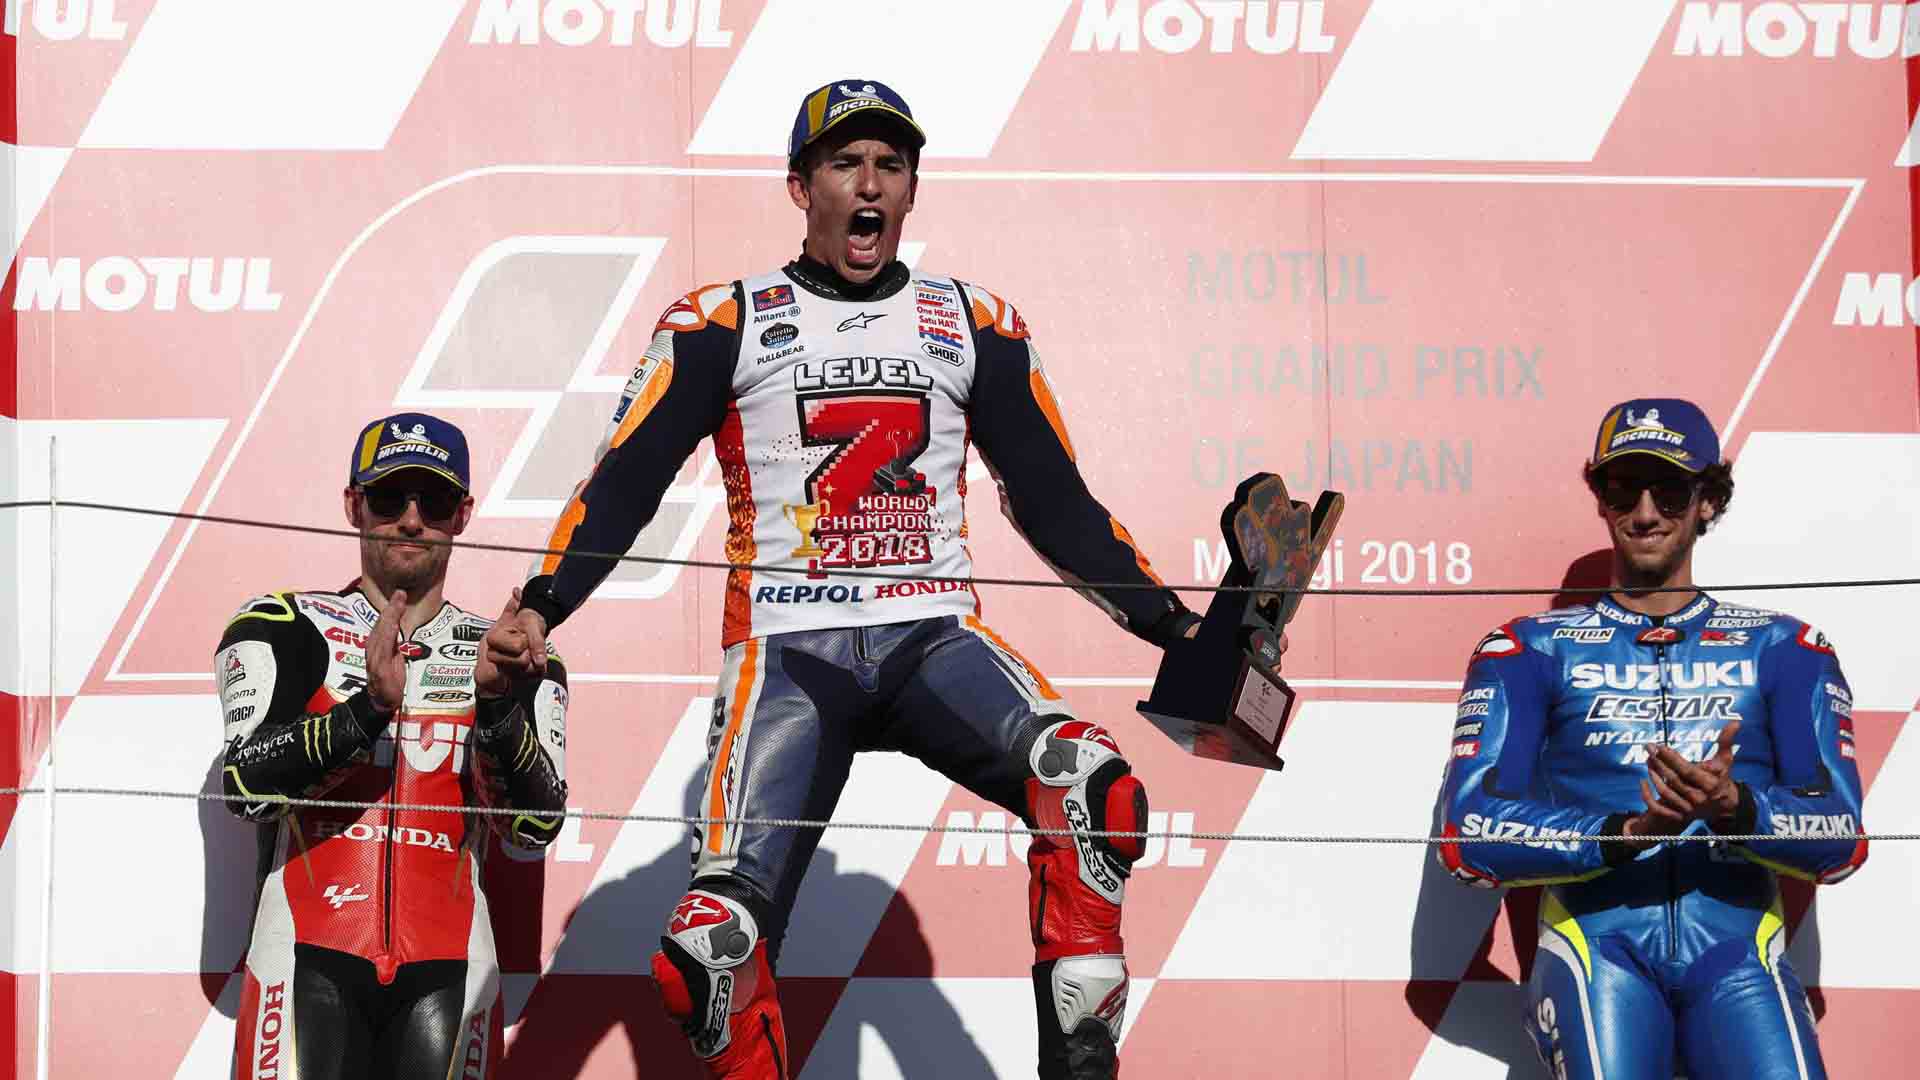 Marc Márquez agranda su leyenda y obtiene su quinto titulo mundial en MotoGP